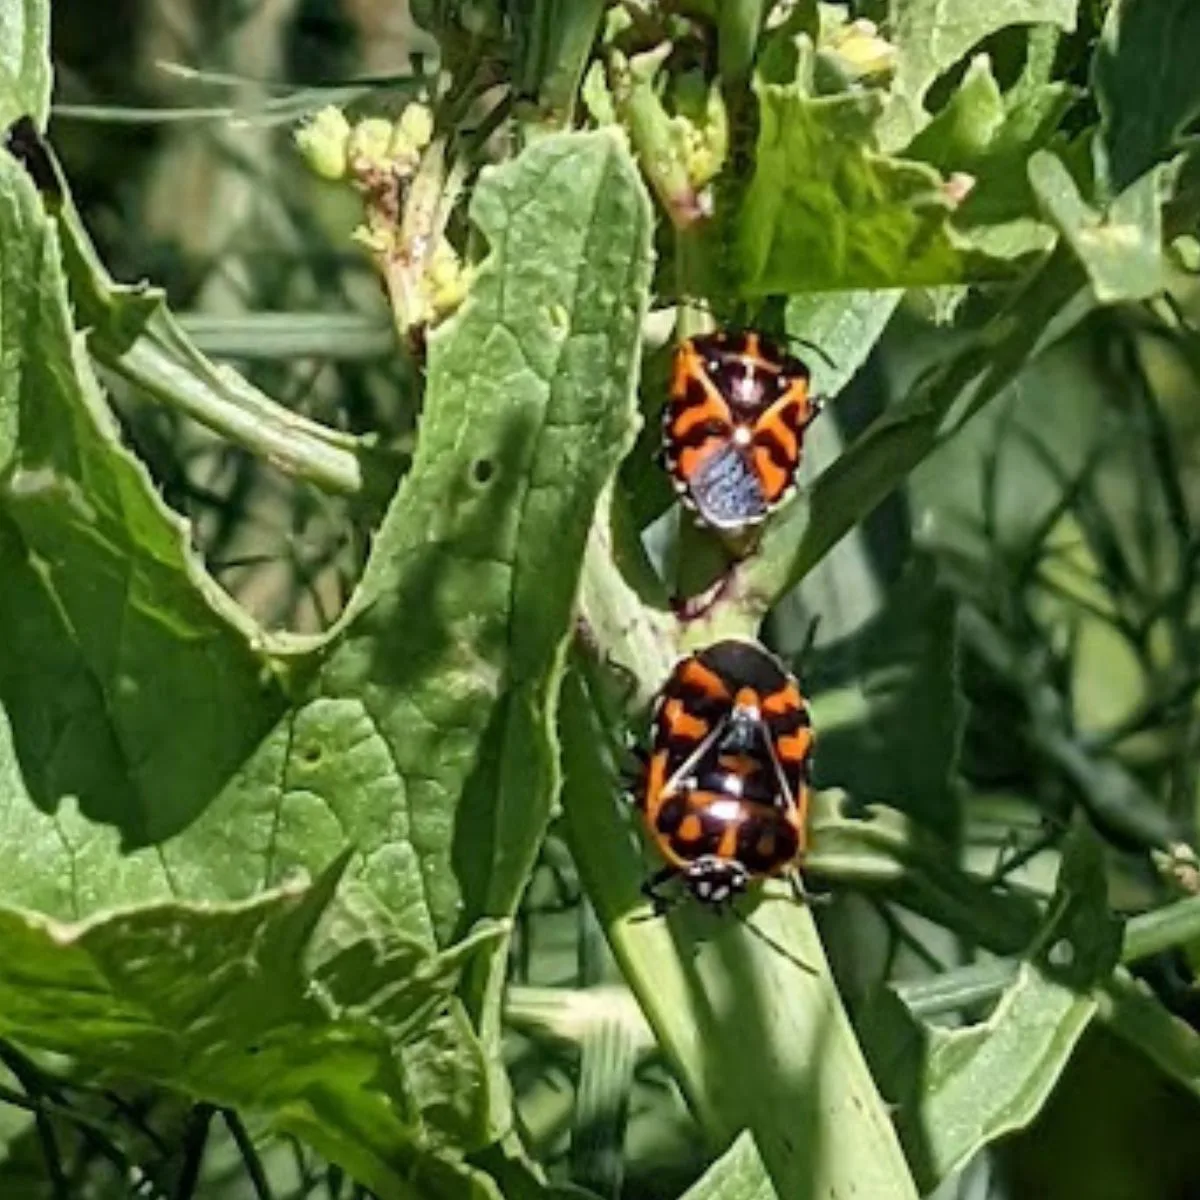 harlequin bugs in my garden